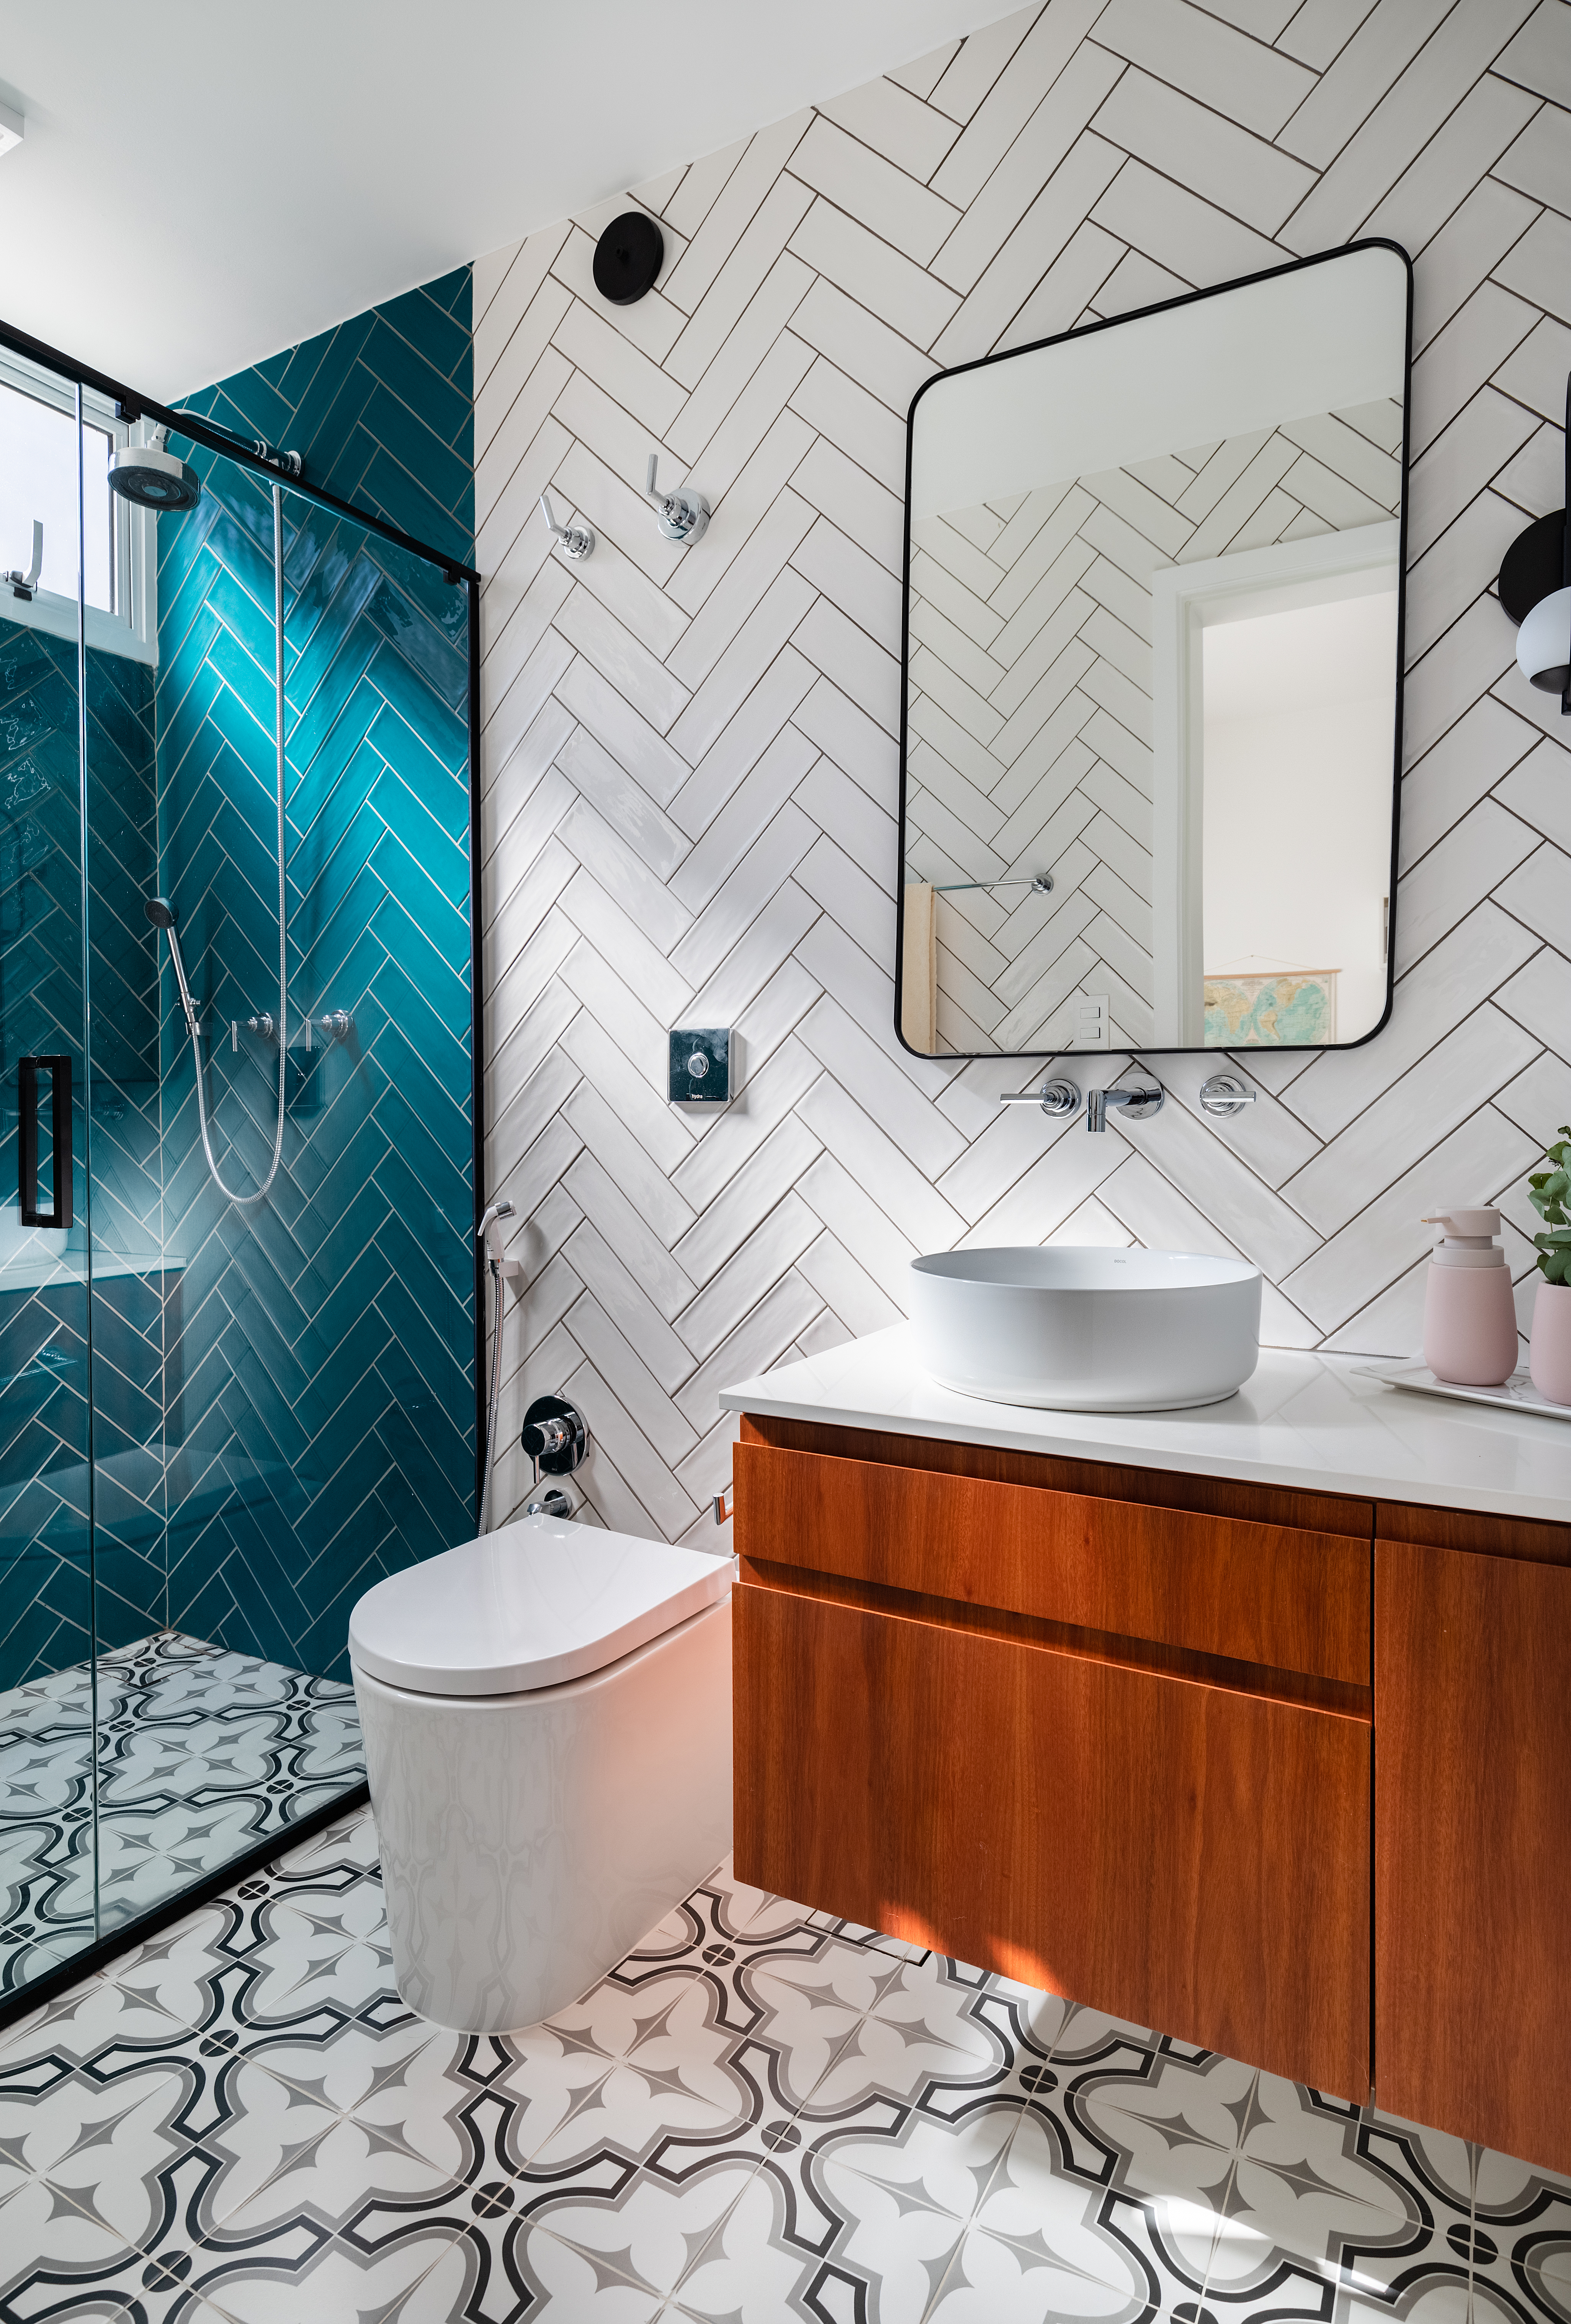 Projeto de Adriana Bersou. Na foto, banheiro com piso de ladrilhos e parede de azulejos brancos e azuis.